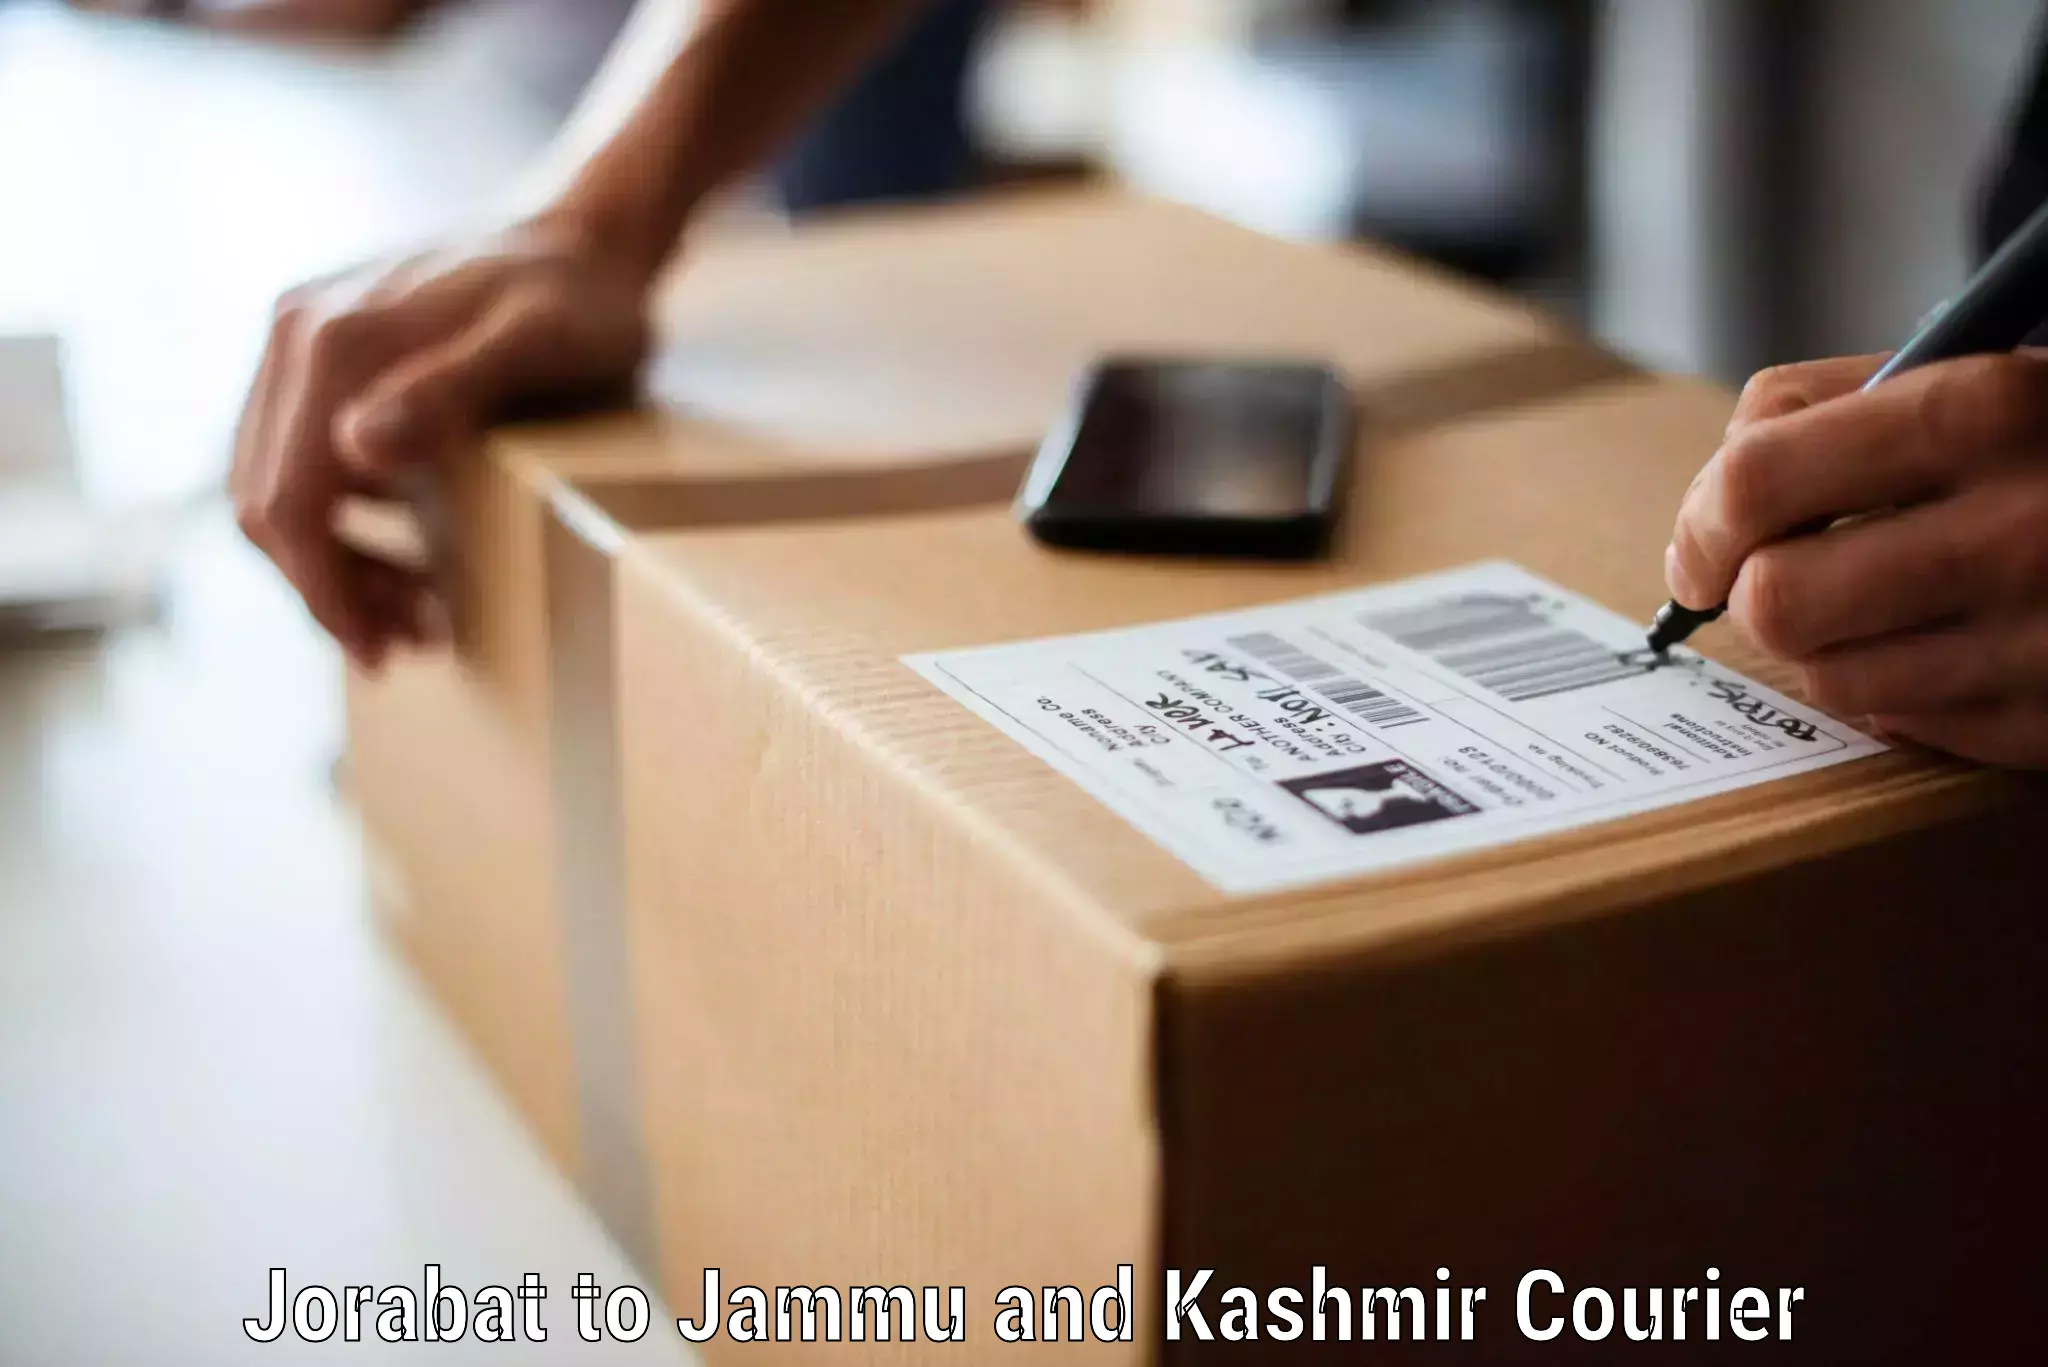 Customized furniture moving Jorabat to Jammu and Kashmir